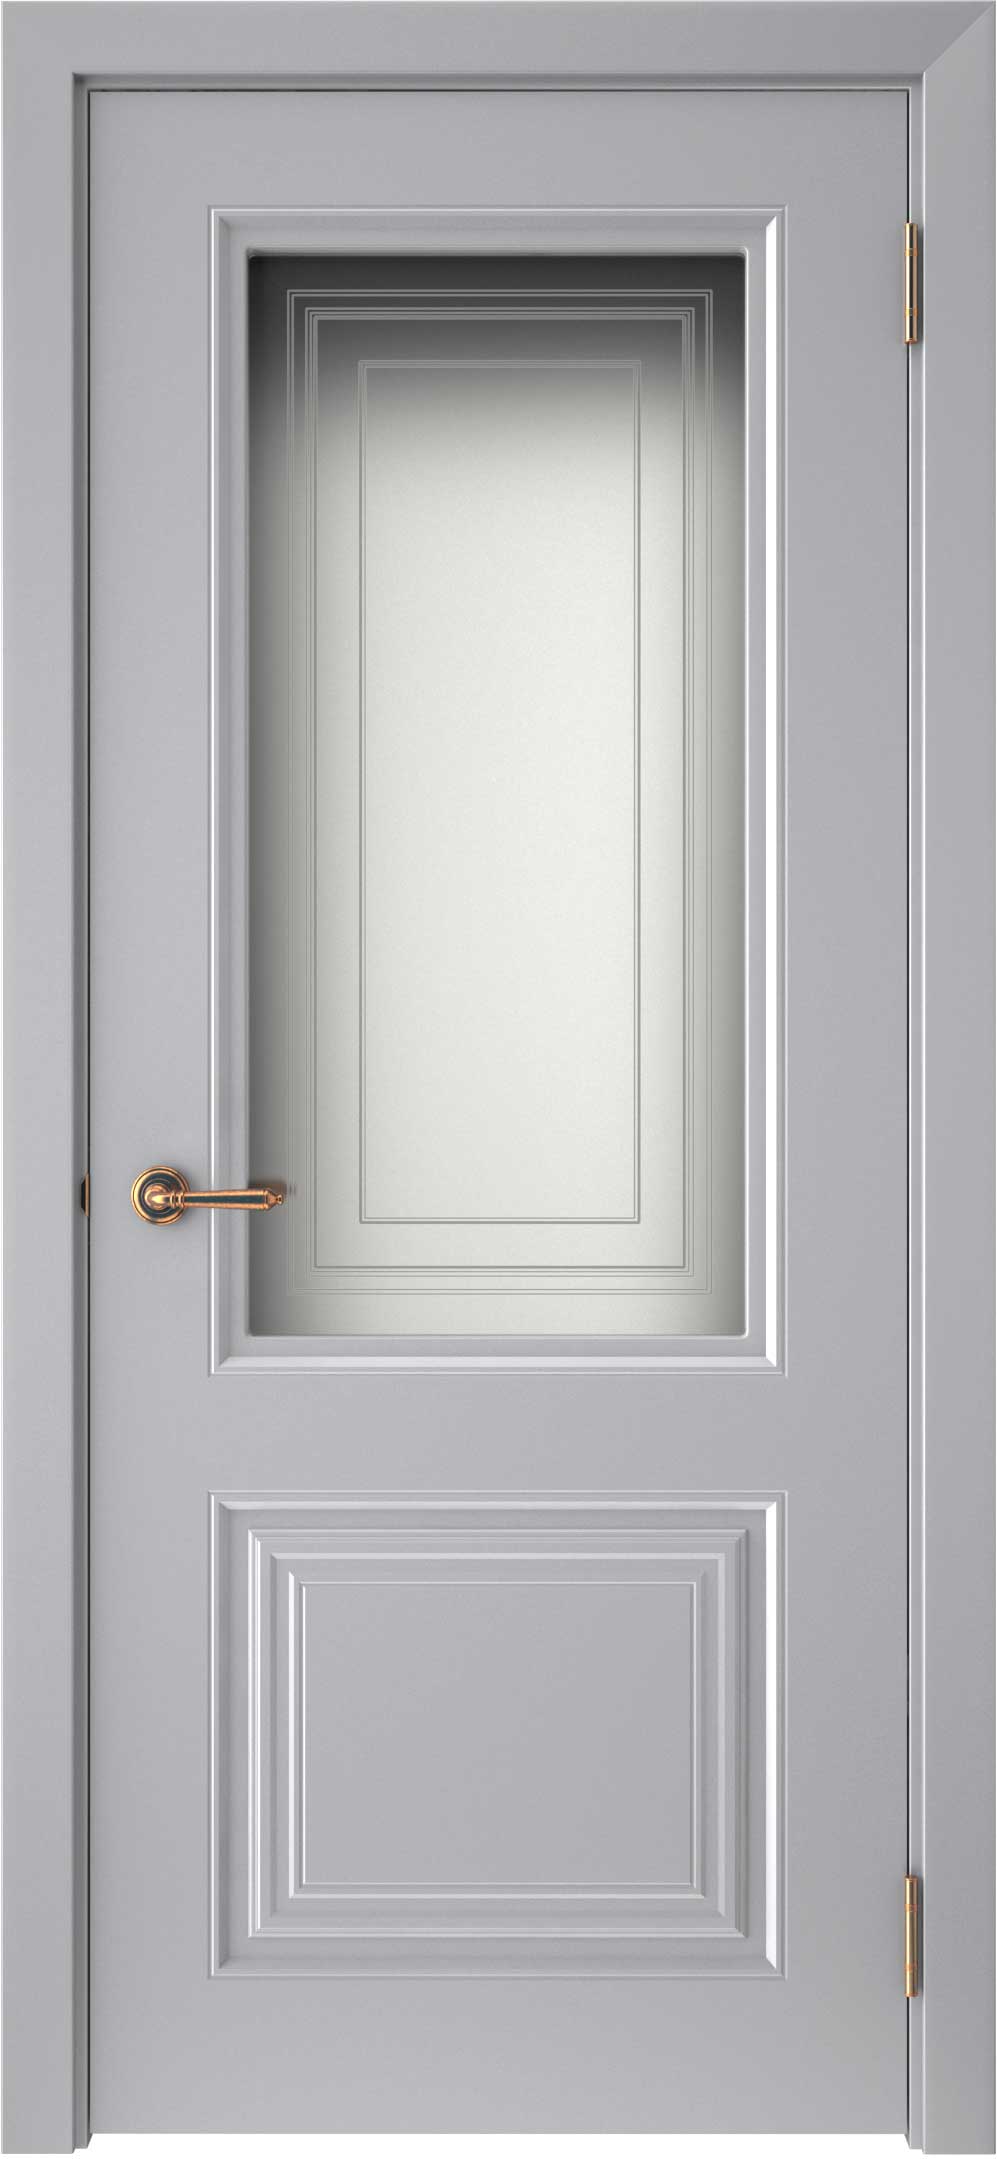 Двери крашеные (Эмаль) ТЕКОНА Смальта-42 со стеклом Серый ral 7036 размер 200 х 80 см. артикул F0000093295